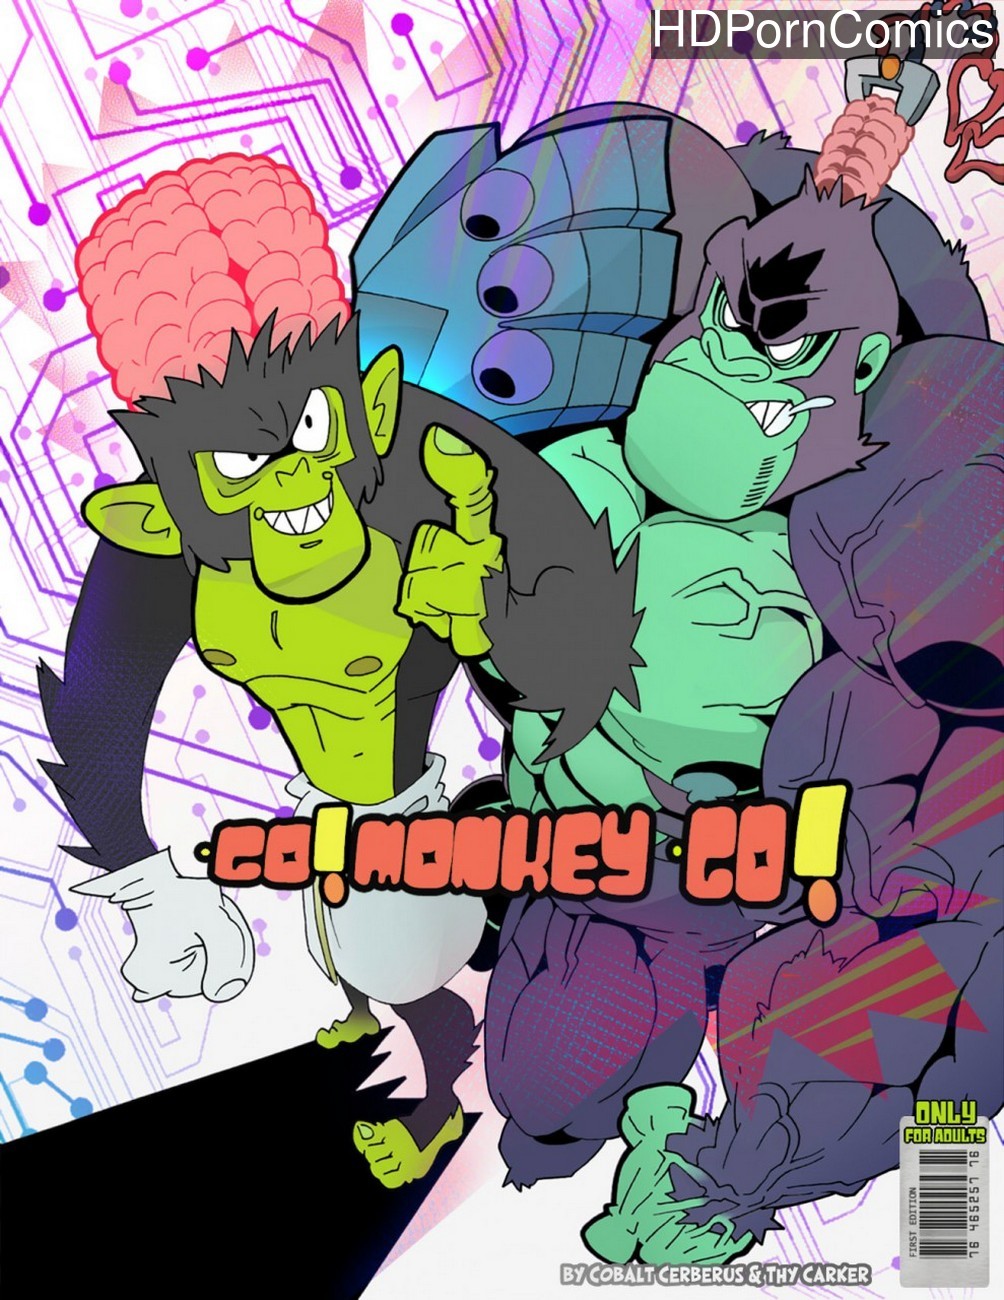 Ape Gay Porn - Go! Monkey Go! comic porn - HD Porn Comics